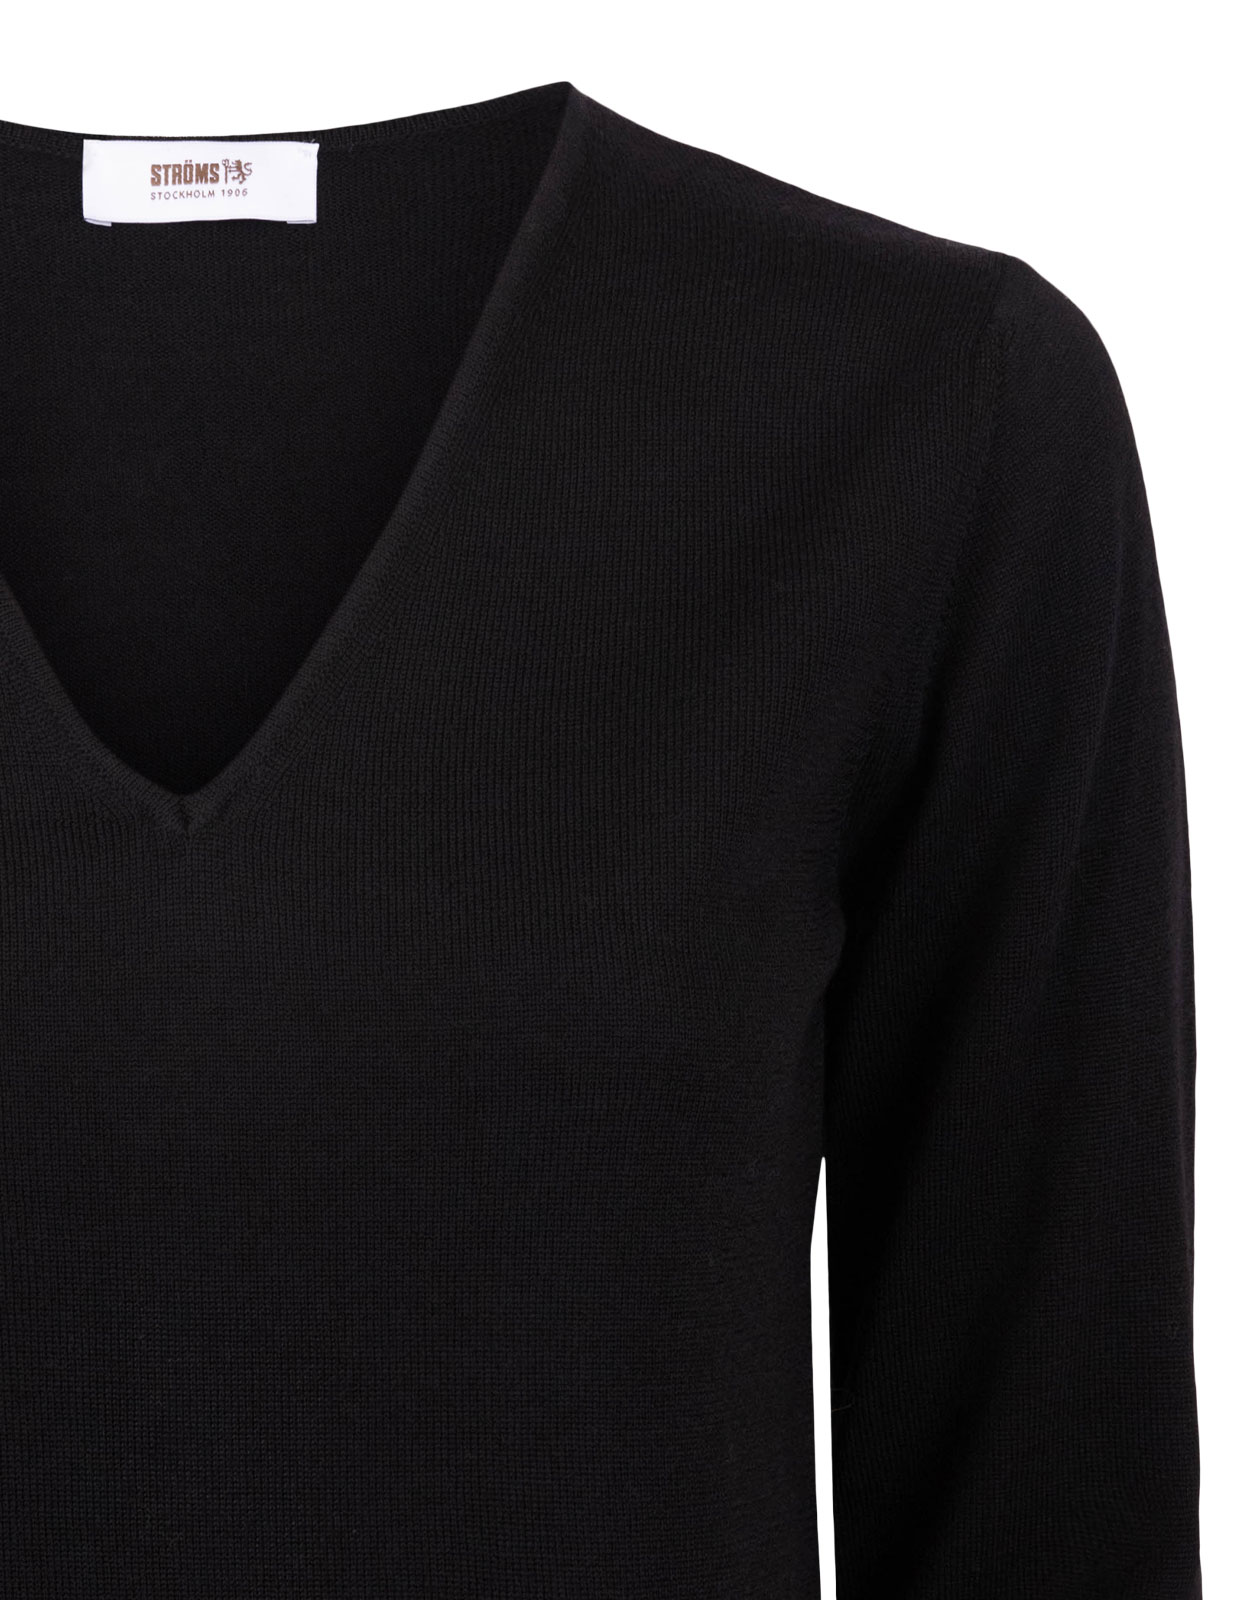 V-neck Sweater Black Stl XS